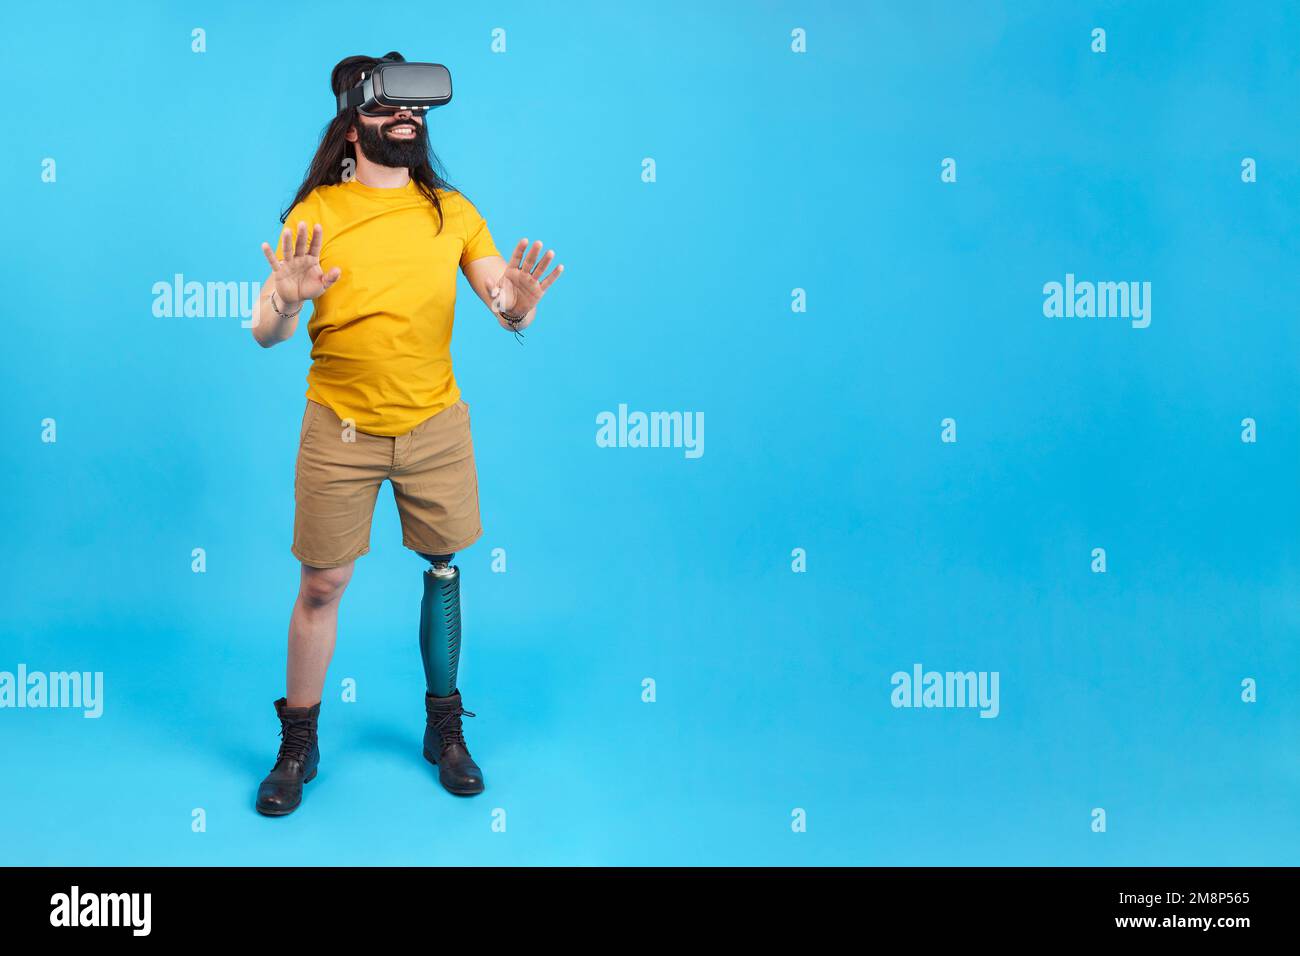 Uomo con gamba protesica gesturante mentre si usa un occhiale virtuale Foto Stock